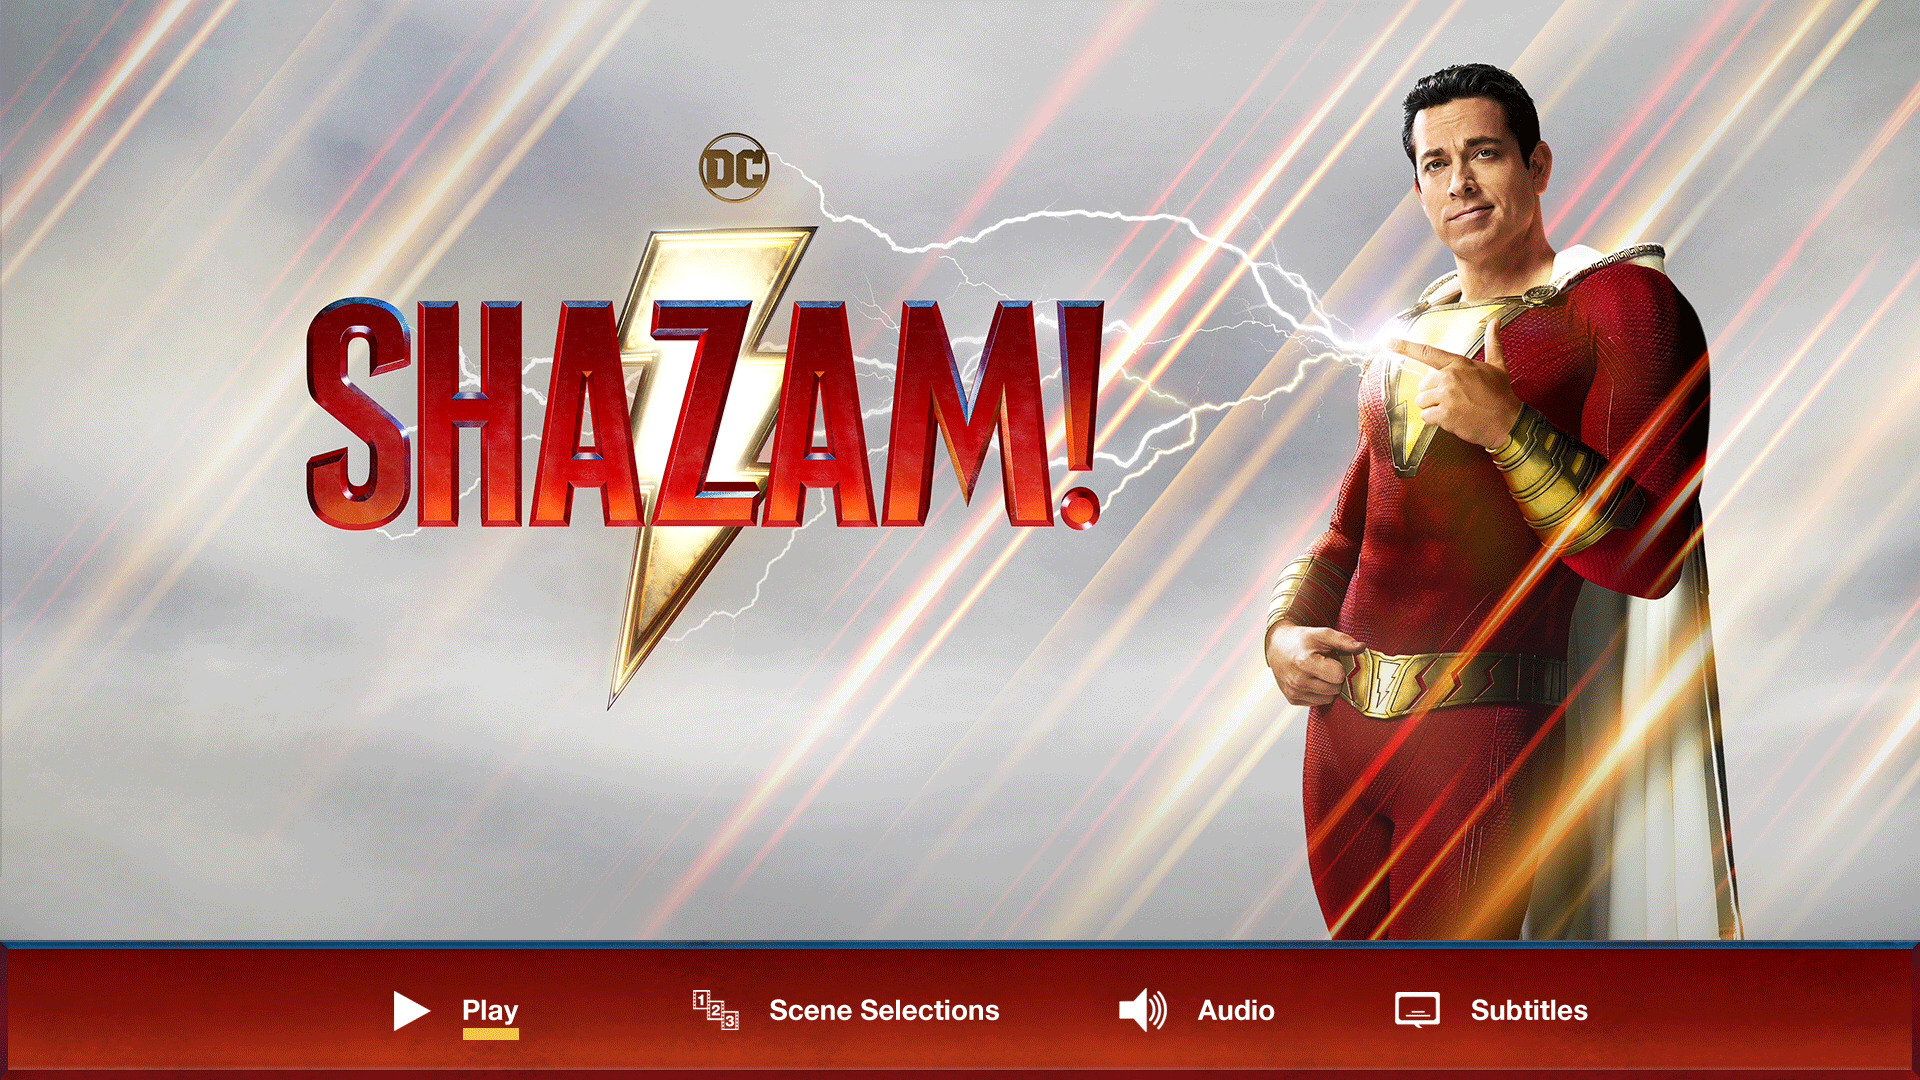 Shazam! 2019 - DescargatePelis.com